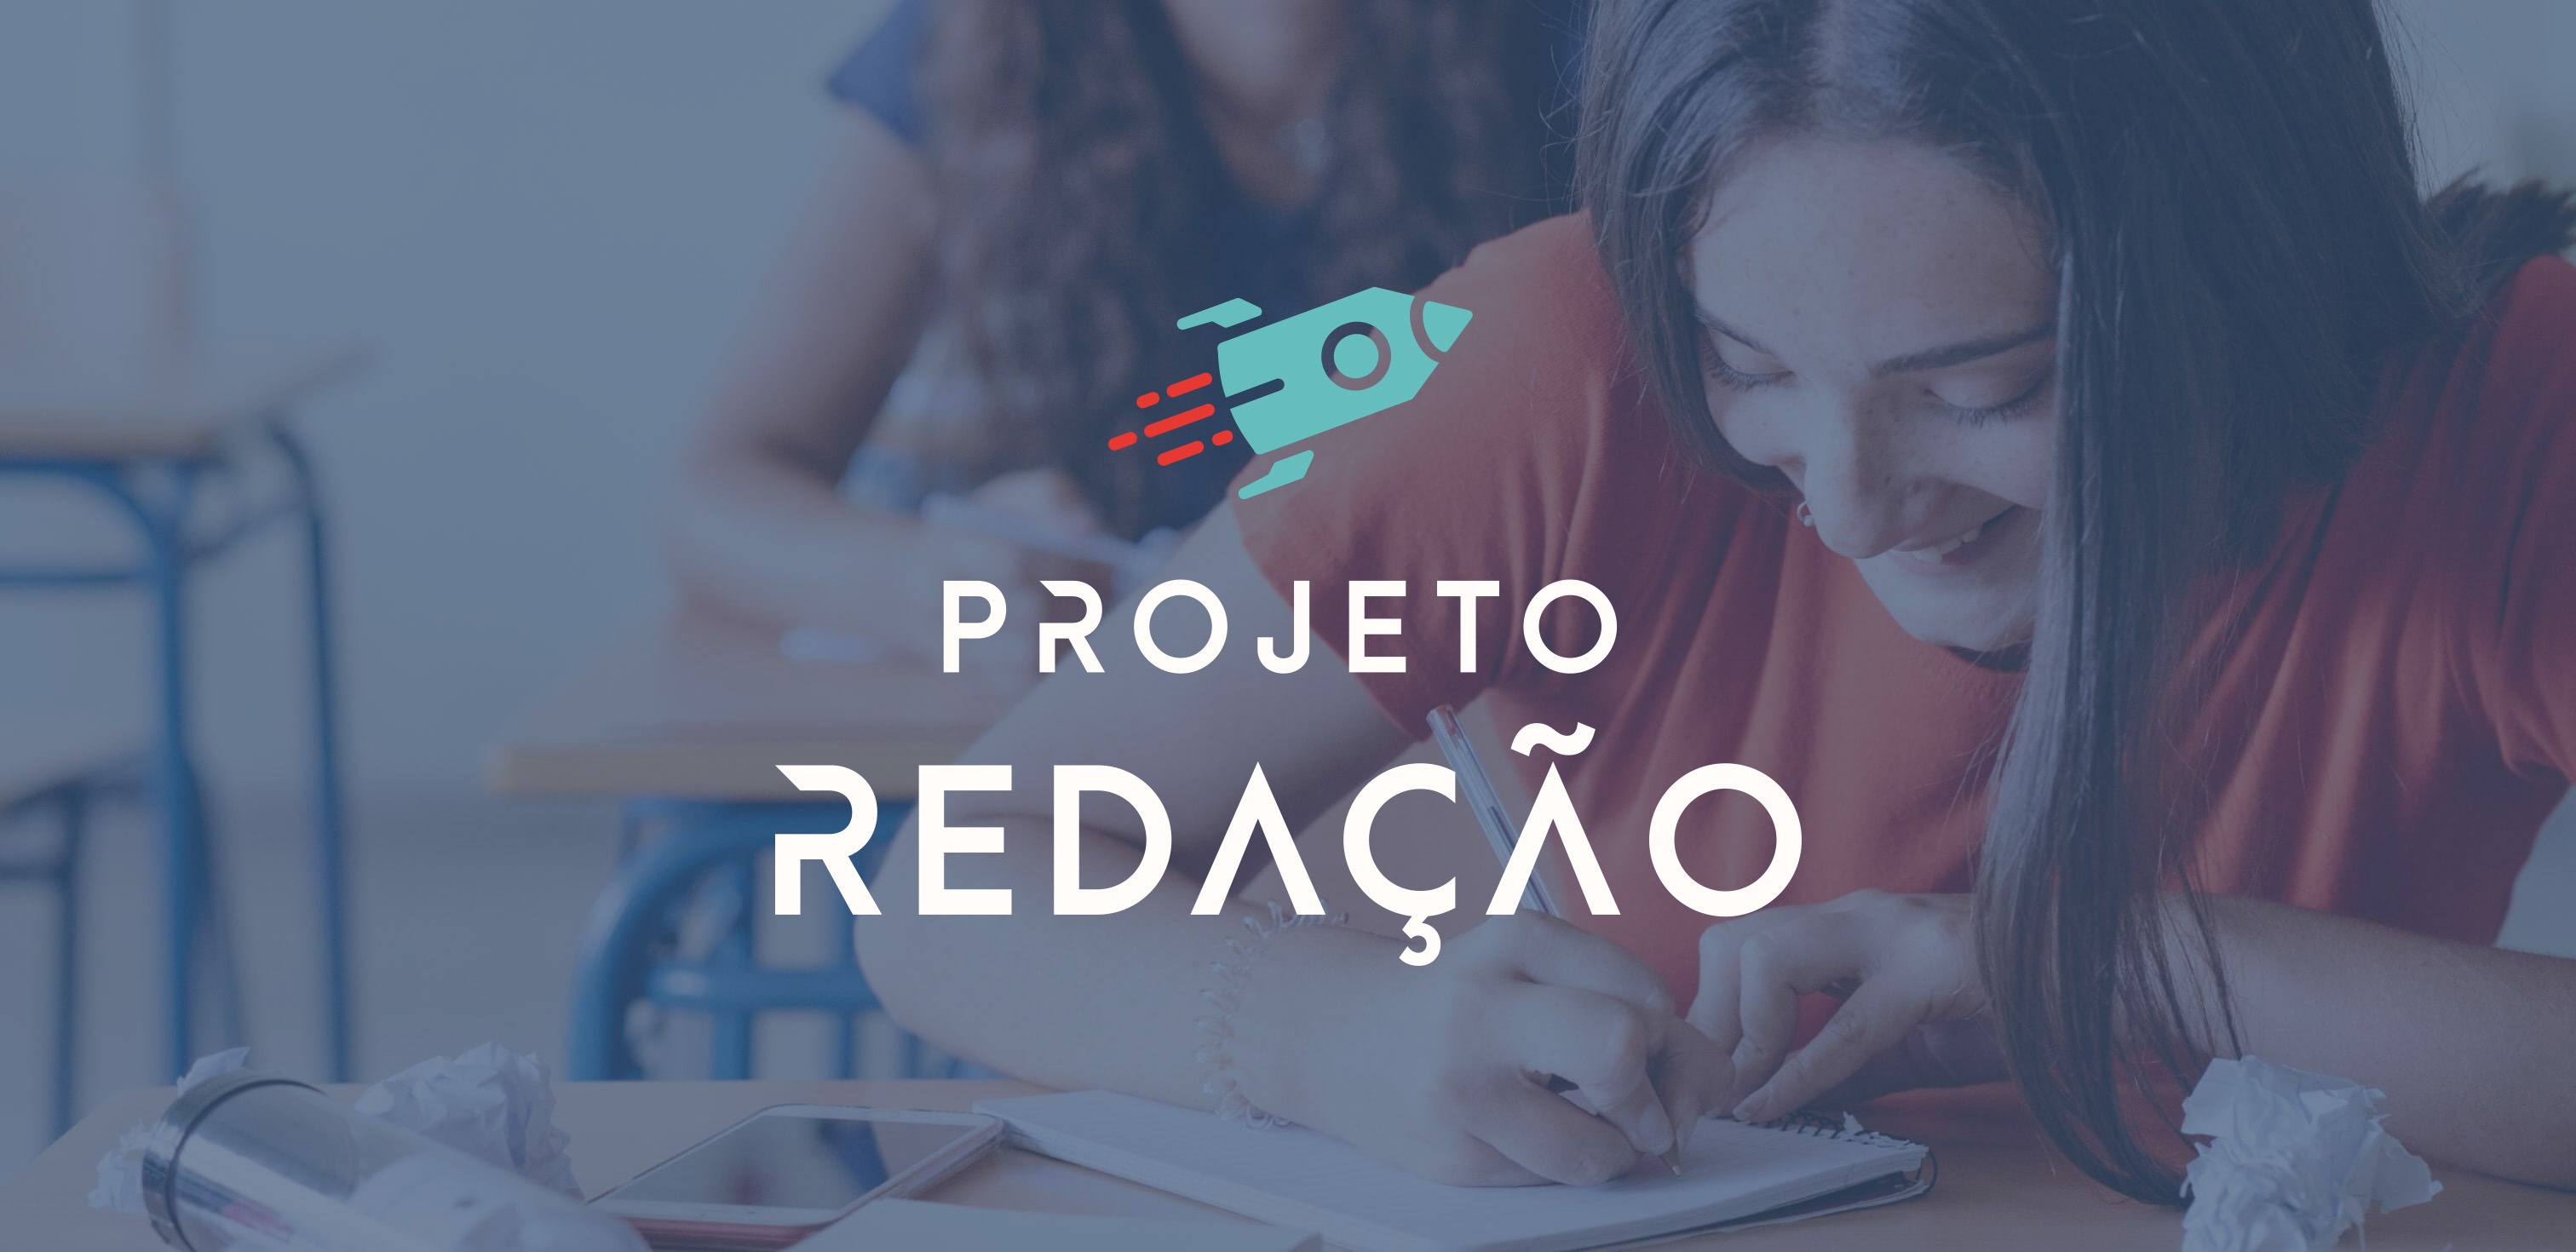 (c) Projetoredacao.com.br